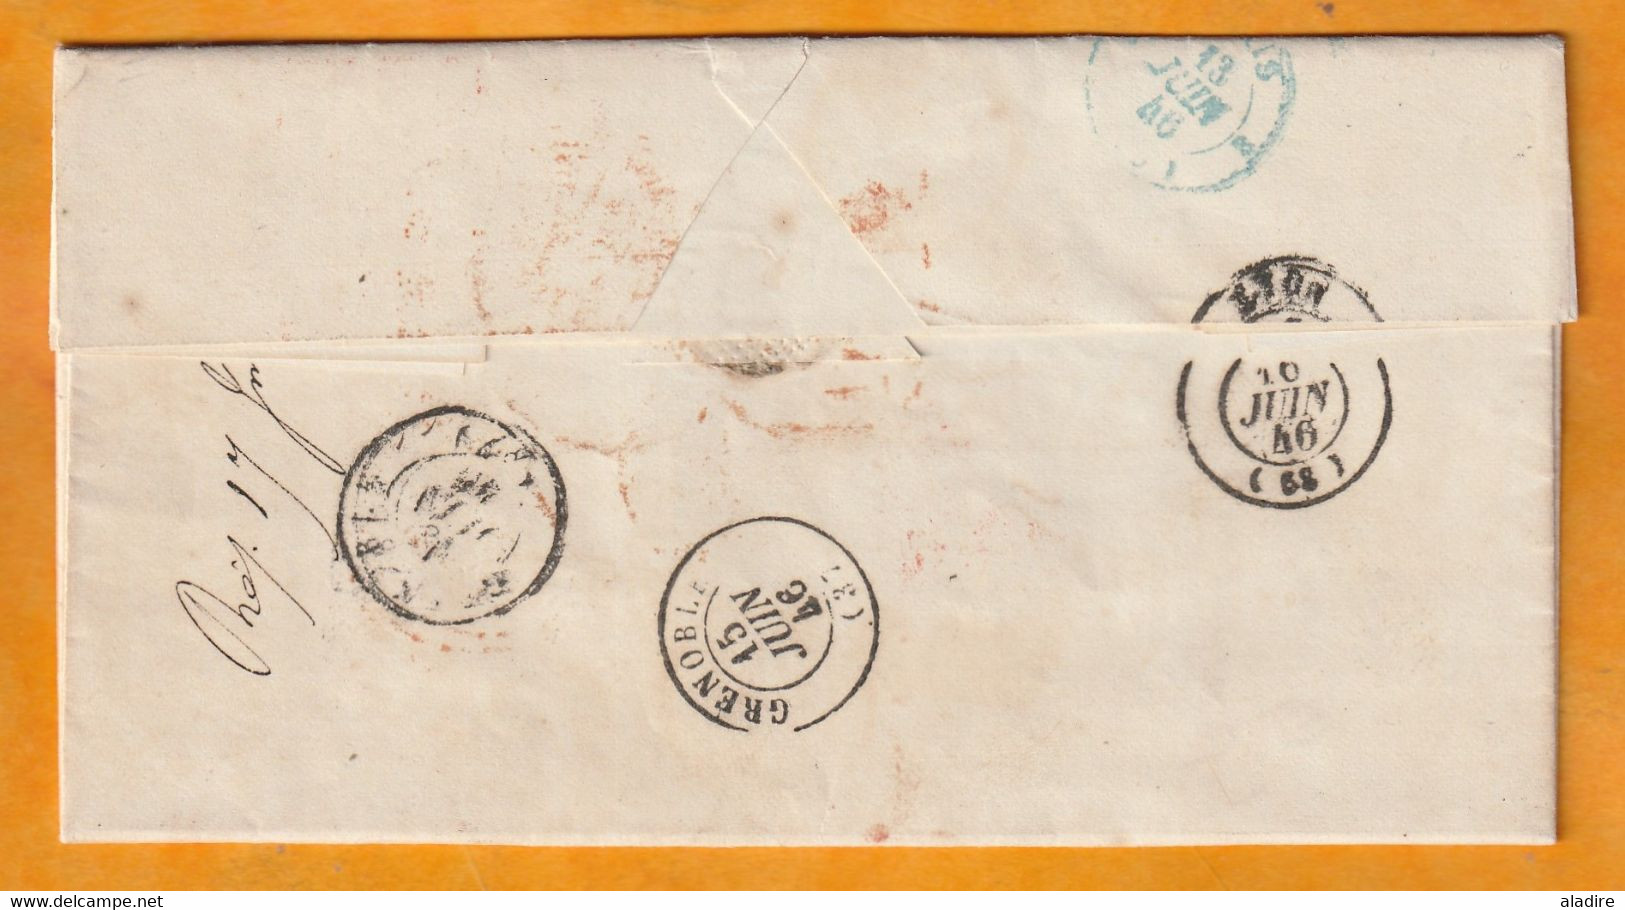 1846 - Lettre Pliée En Anglais En Port Payé De London, Londres Vers Grenoble Puis Lyon -  Via Boulogne - Postmark Collection